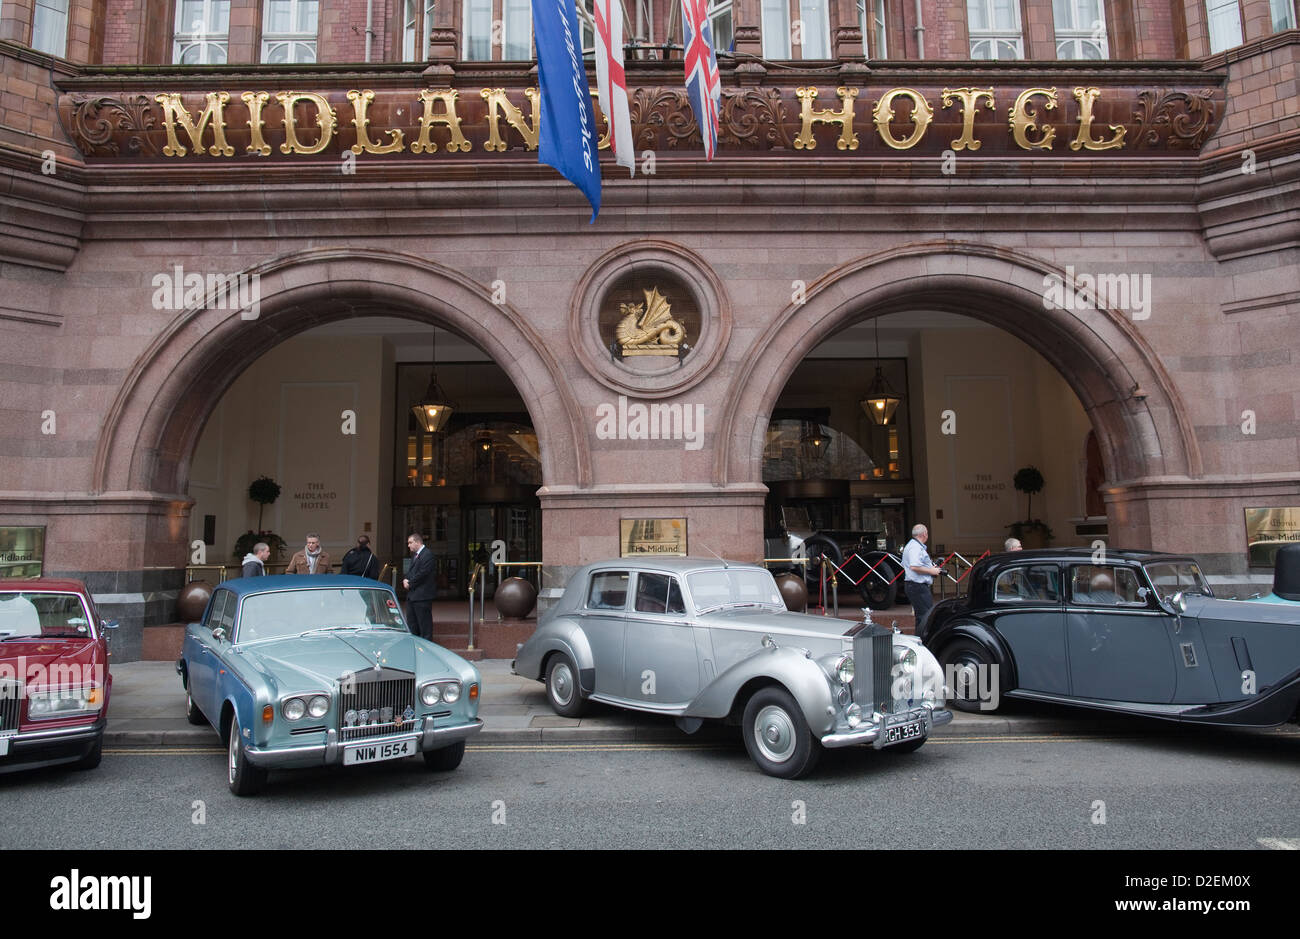 Coche Rolls Royce Hotel Midland Manchester fuera del lugar de nacimiento de la empresa Foto de stock